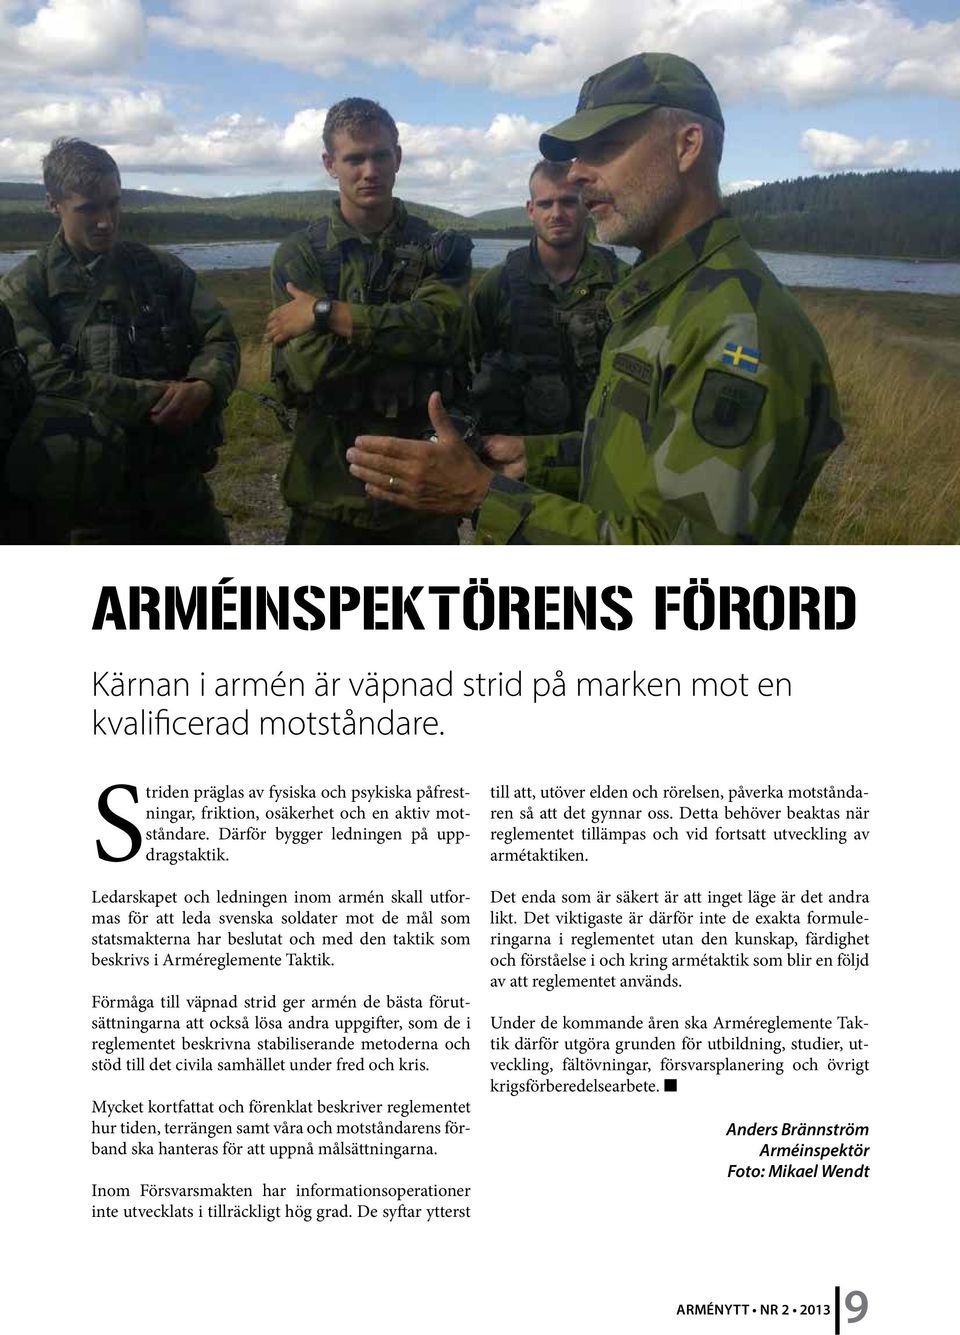 Ledarskapet och ledningen inom armén skall utformas för att leda svenska soldater mot de mål som statsmakterna har beslutat och med den taktik som beskrivs i Arméreglemente Taktik.